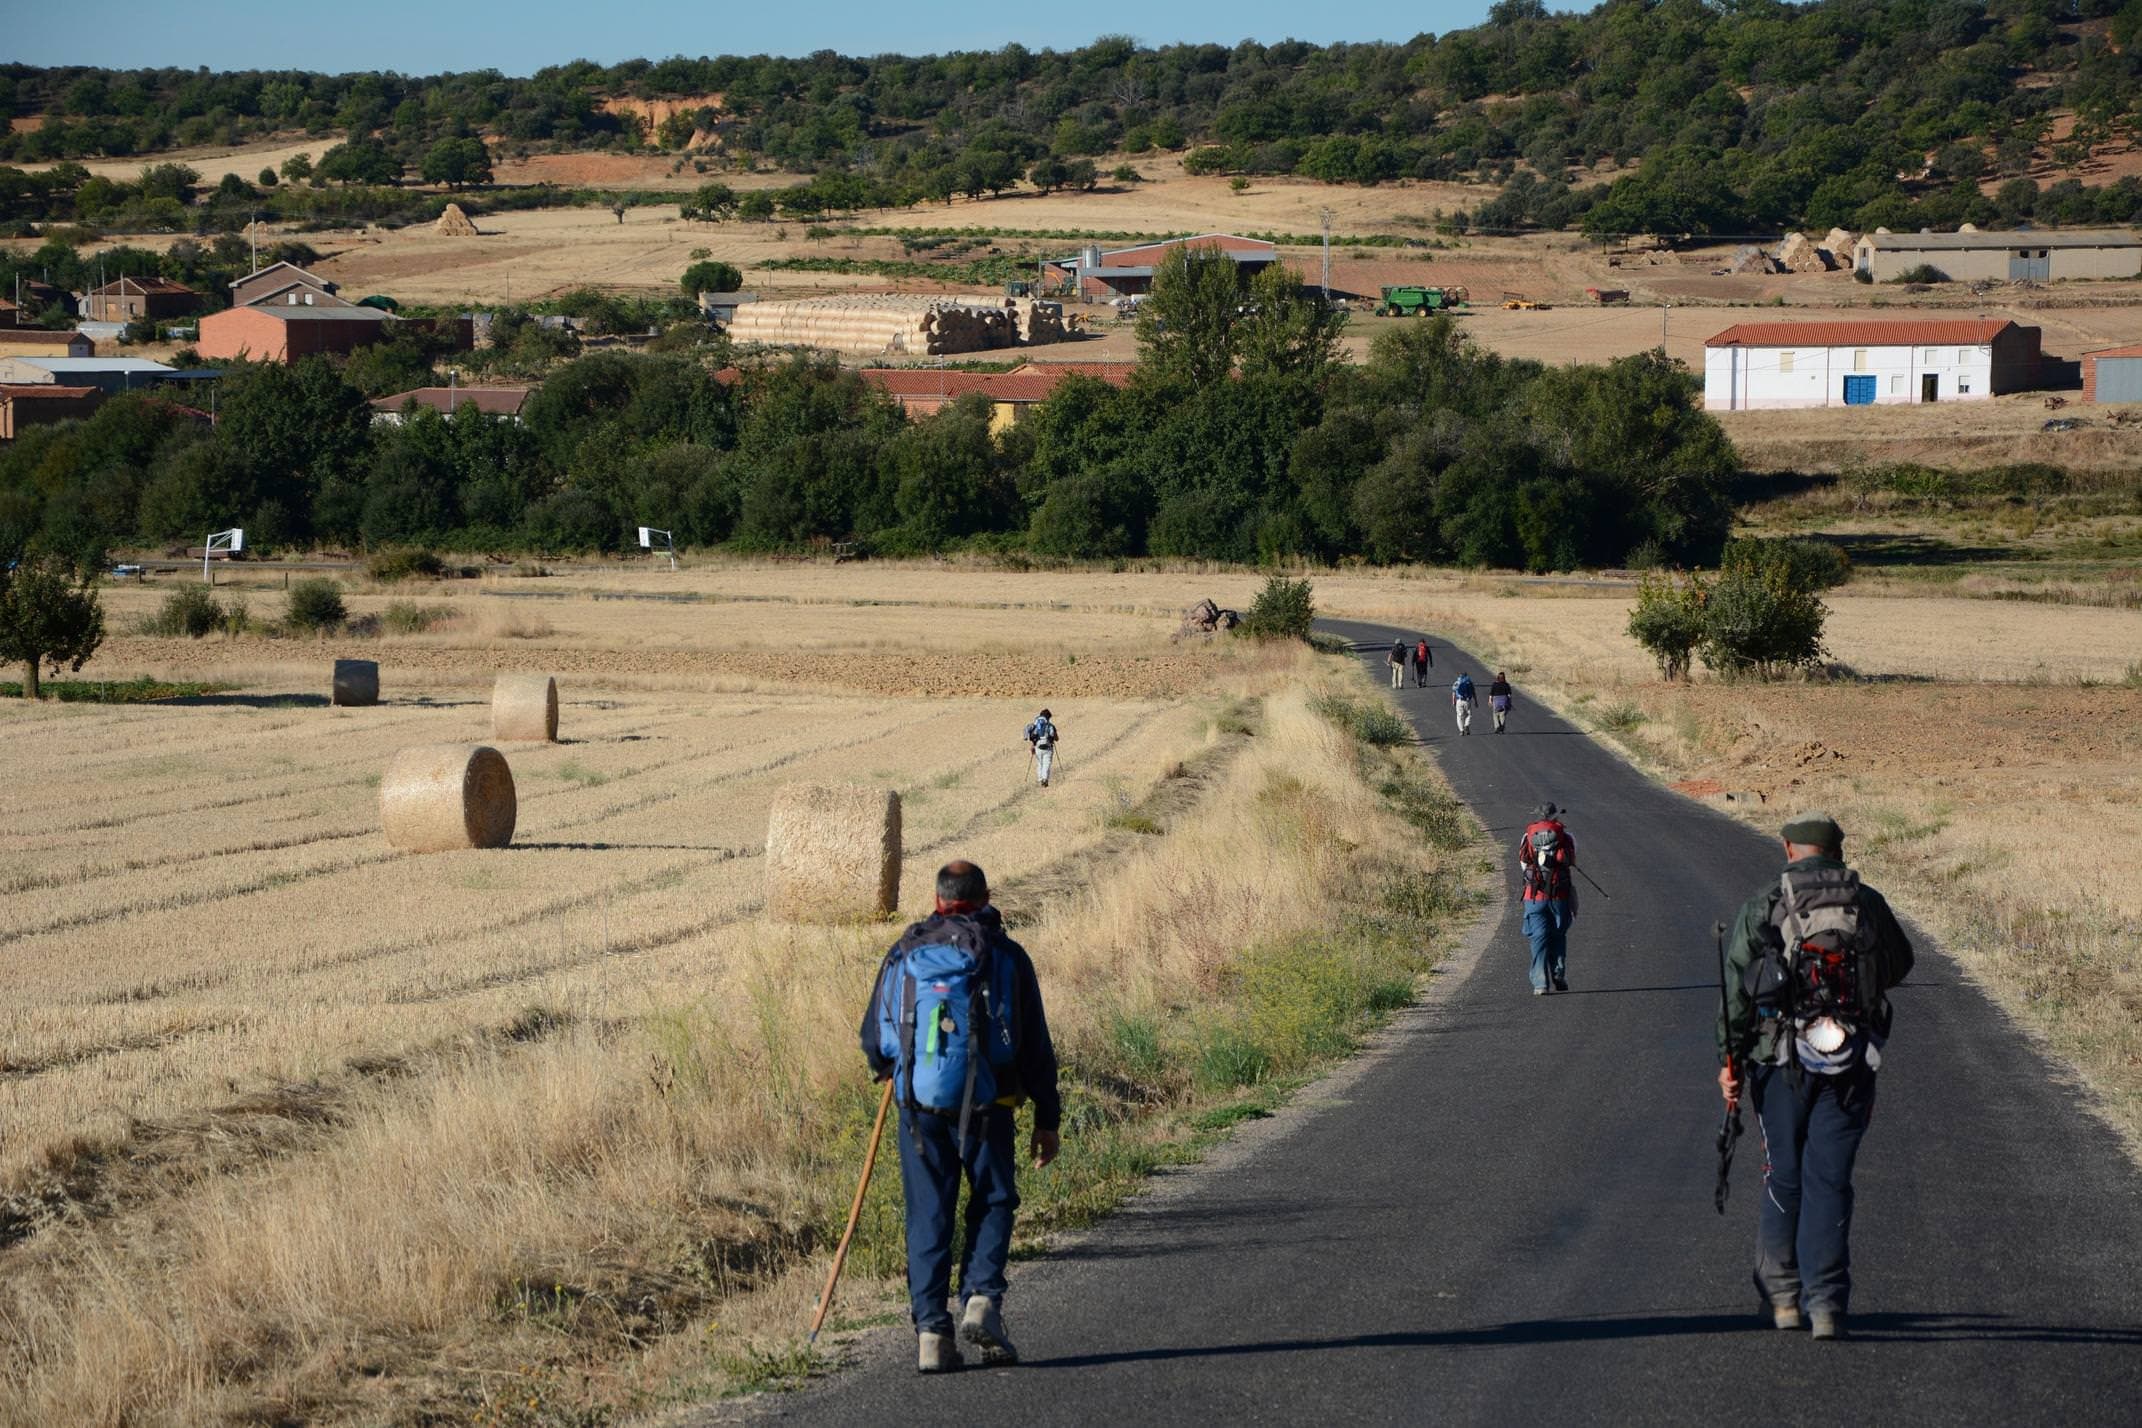 Spain camino de santiago pilgrims on road